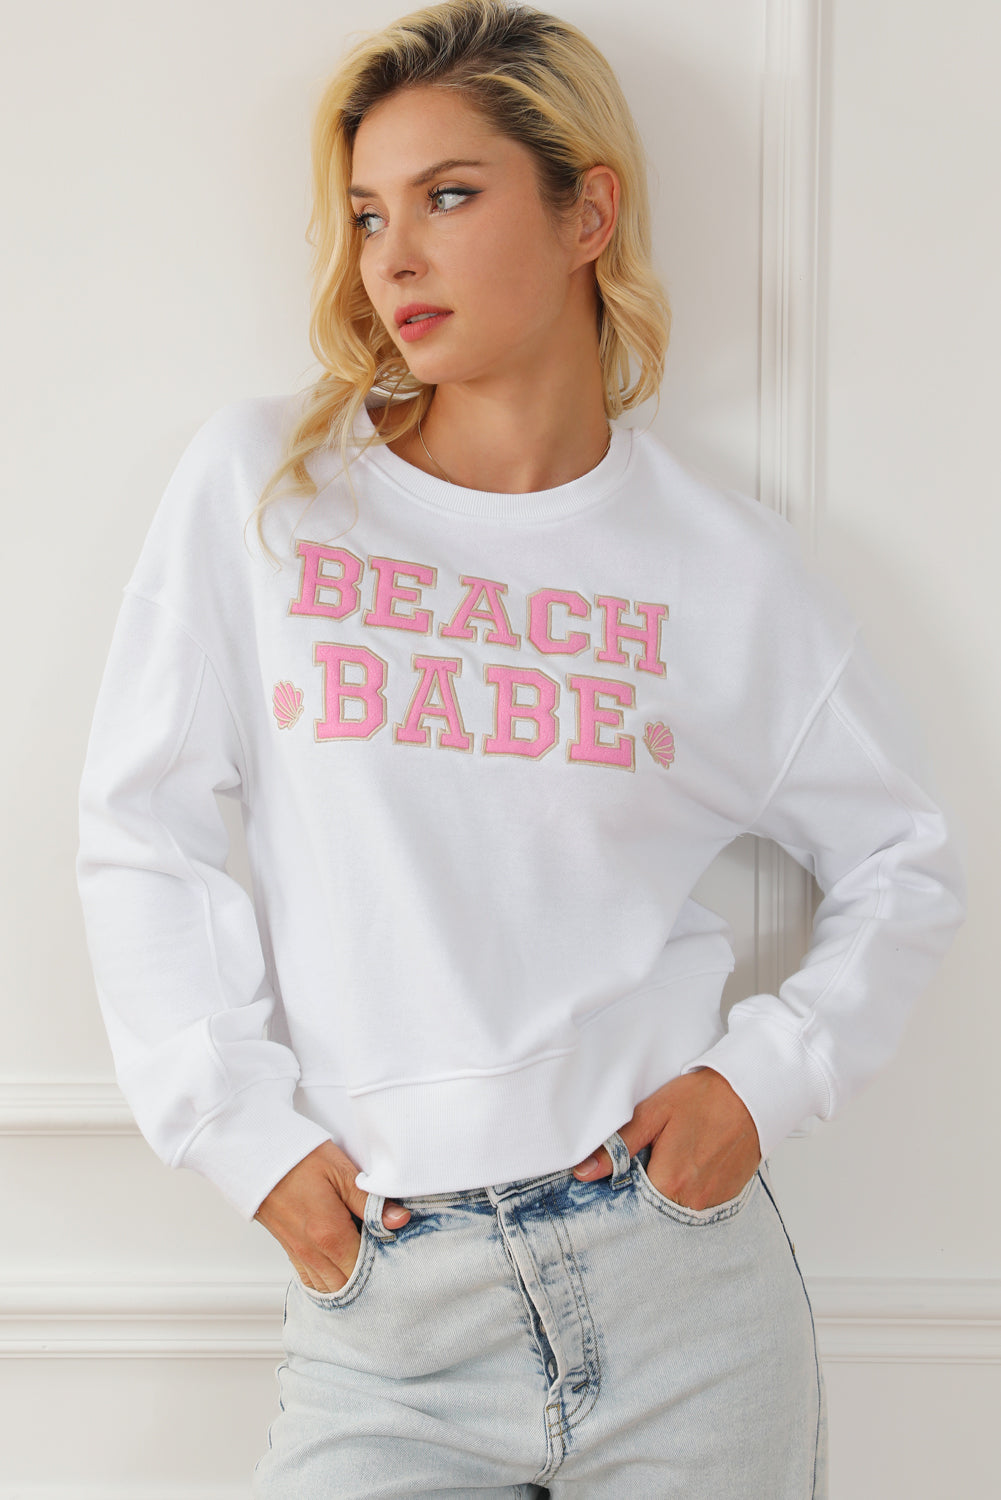 Bela pulover za prosti čas s sloganom BEACH BABE